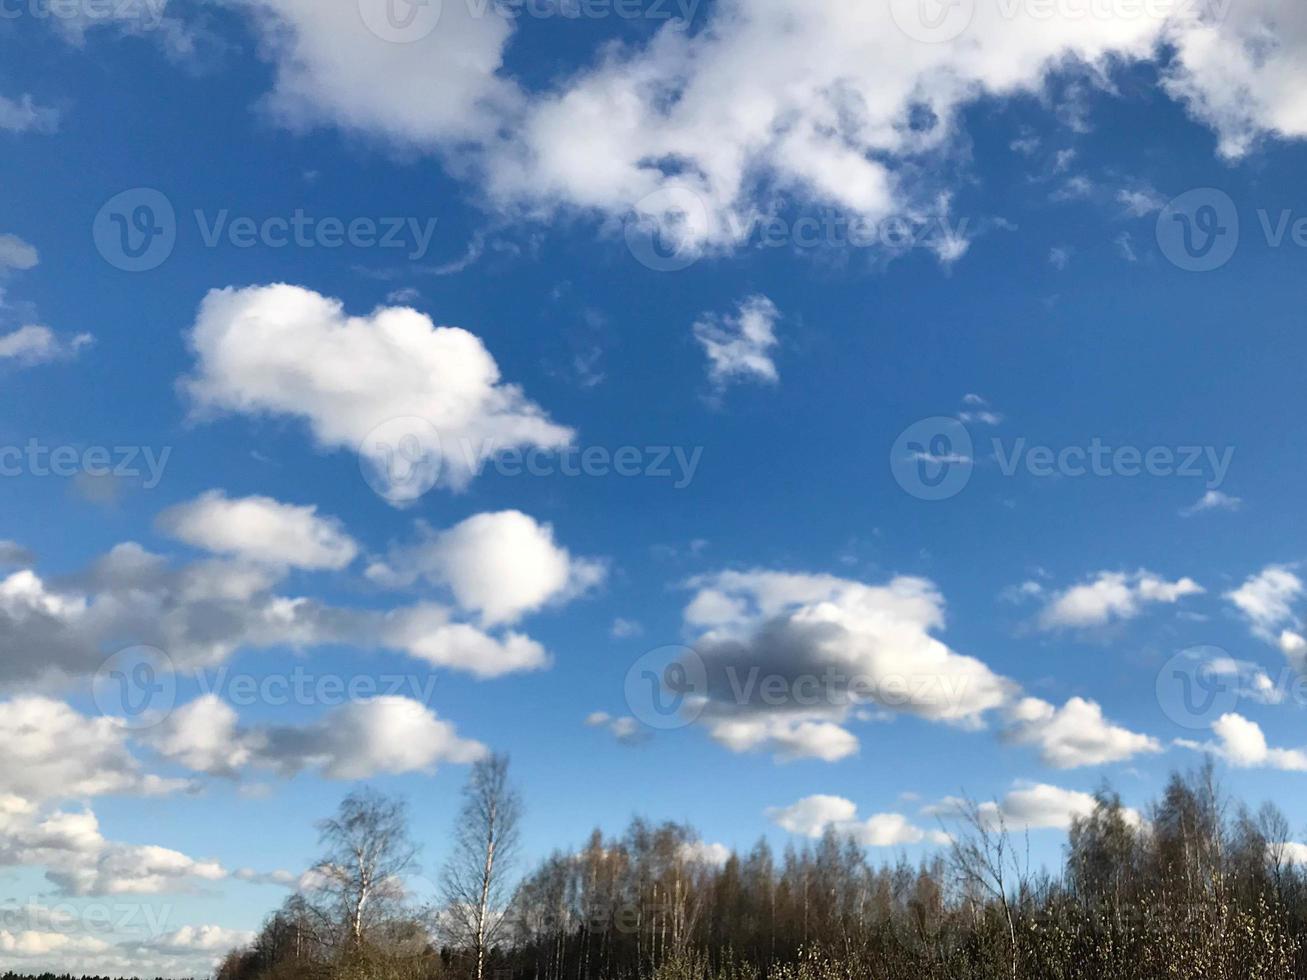 textura del cielo azul con nubes suaves de lluvia limpias y ligeras, esponjosas, aireadas y blancas, contra el fondo de un bosque verde. el fondo foto